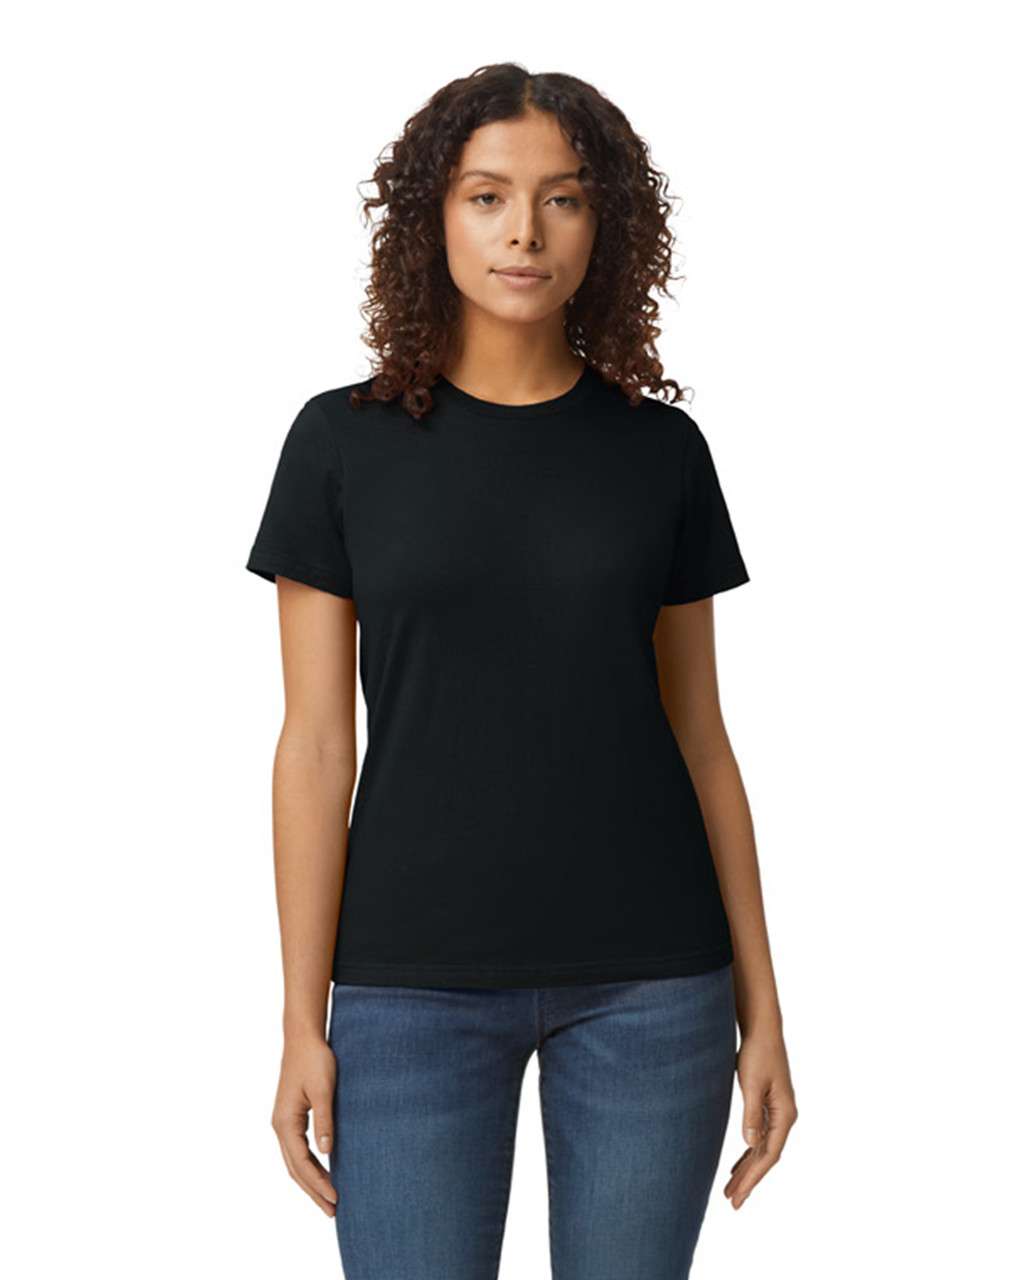 Gildan Softstyle® Midweight Women's T-shirt - black